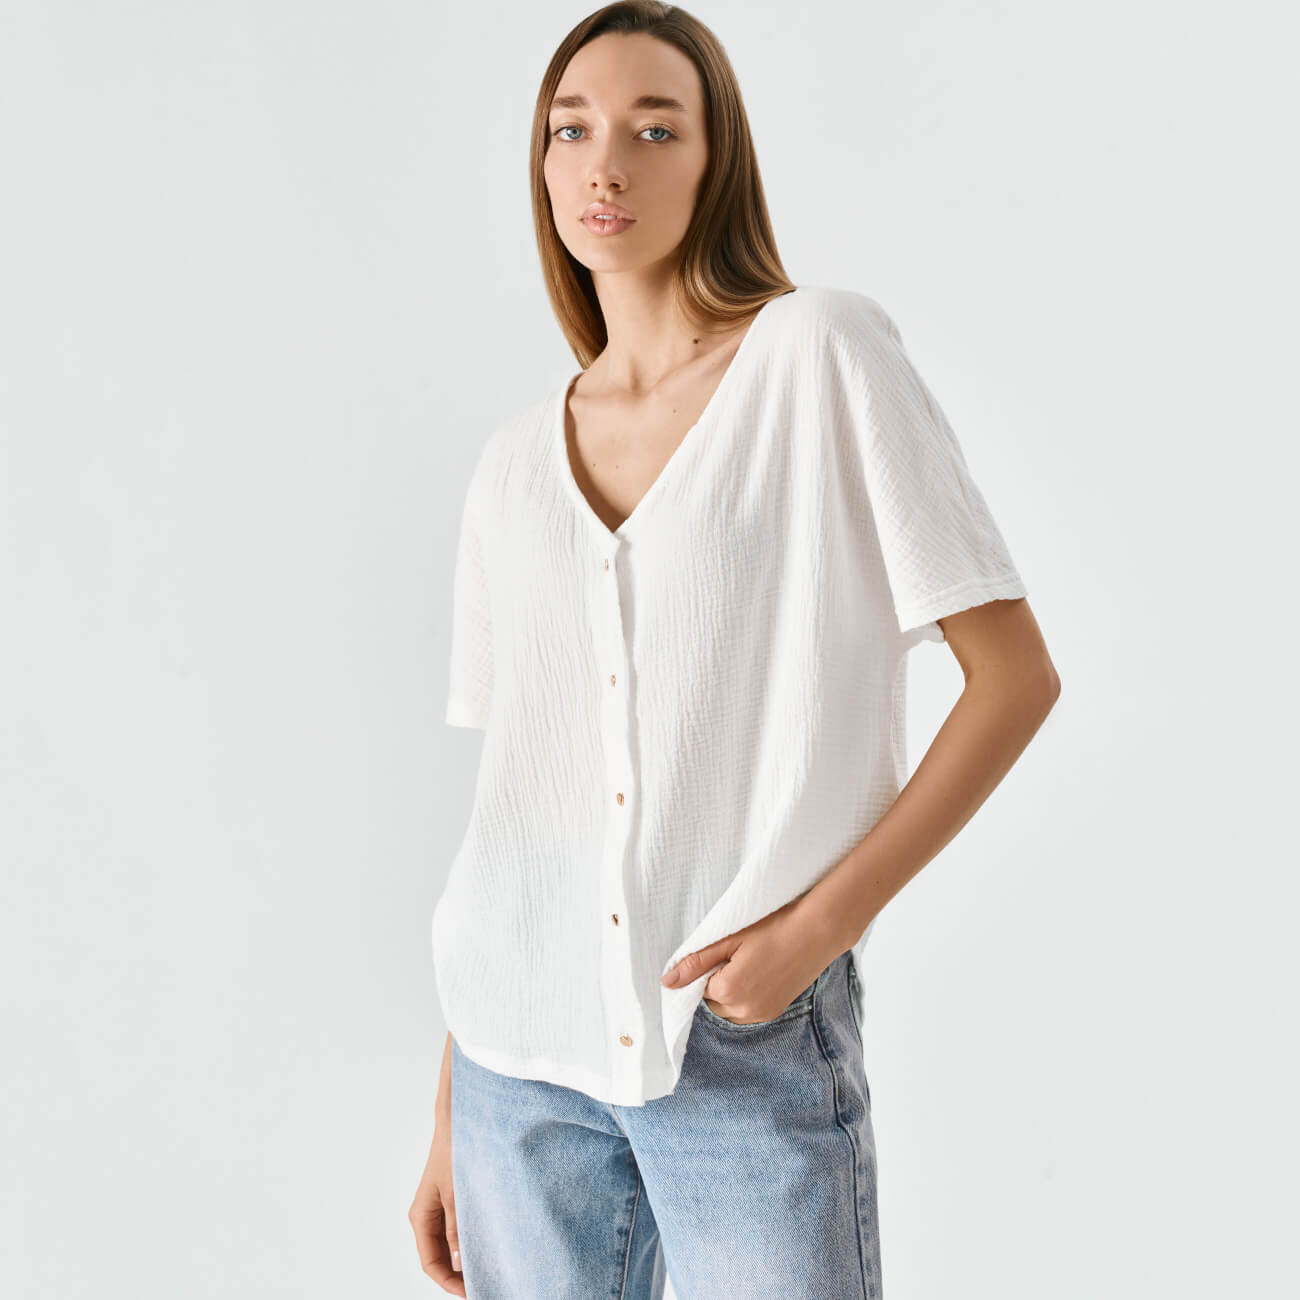 Рубашка женская, р. XL, с коротким рукавом, муслин, белая, Allison туника женская